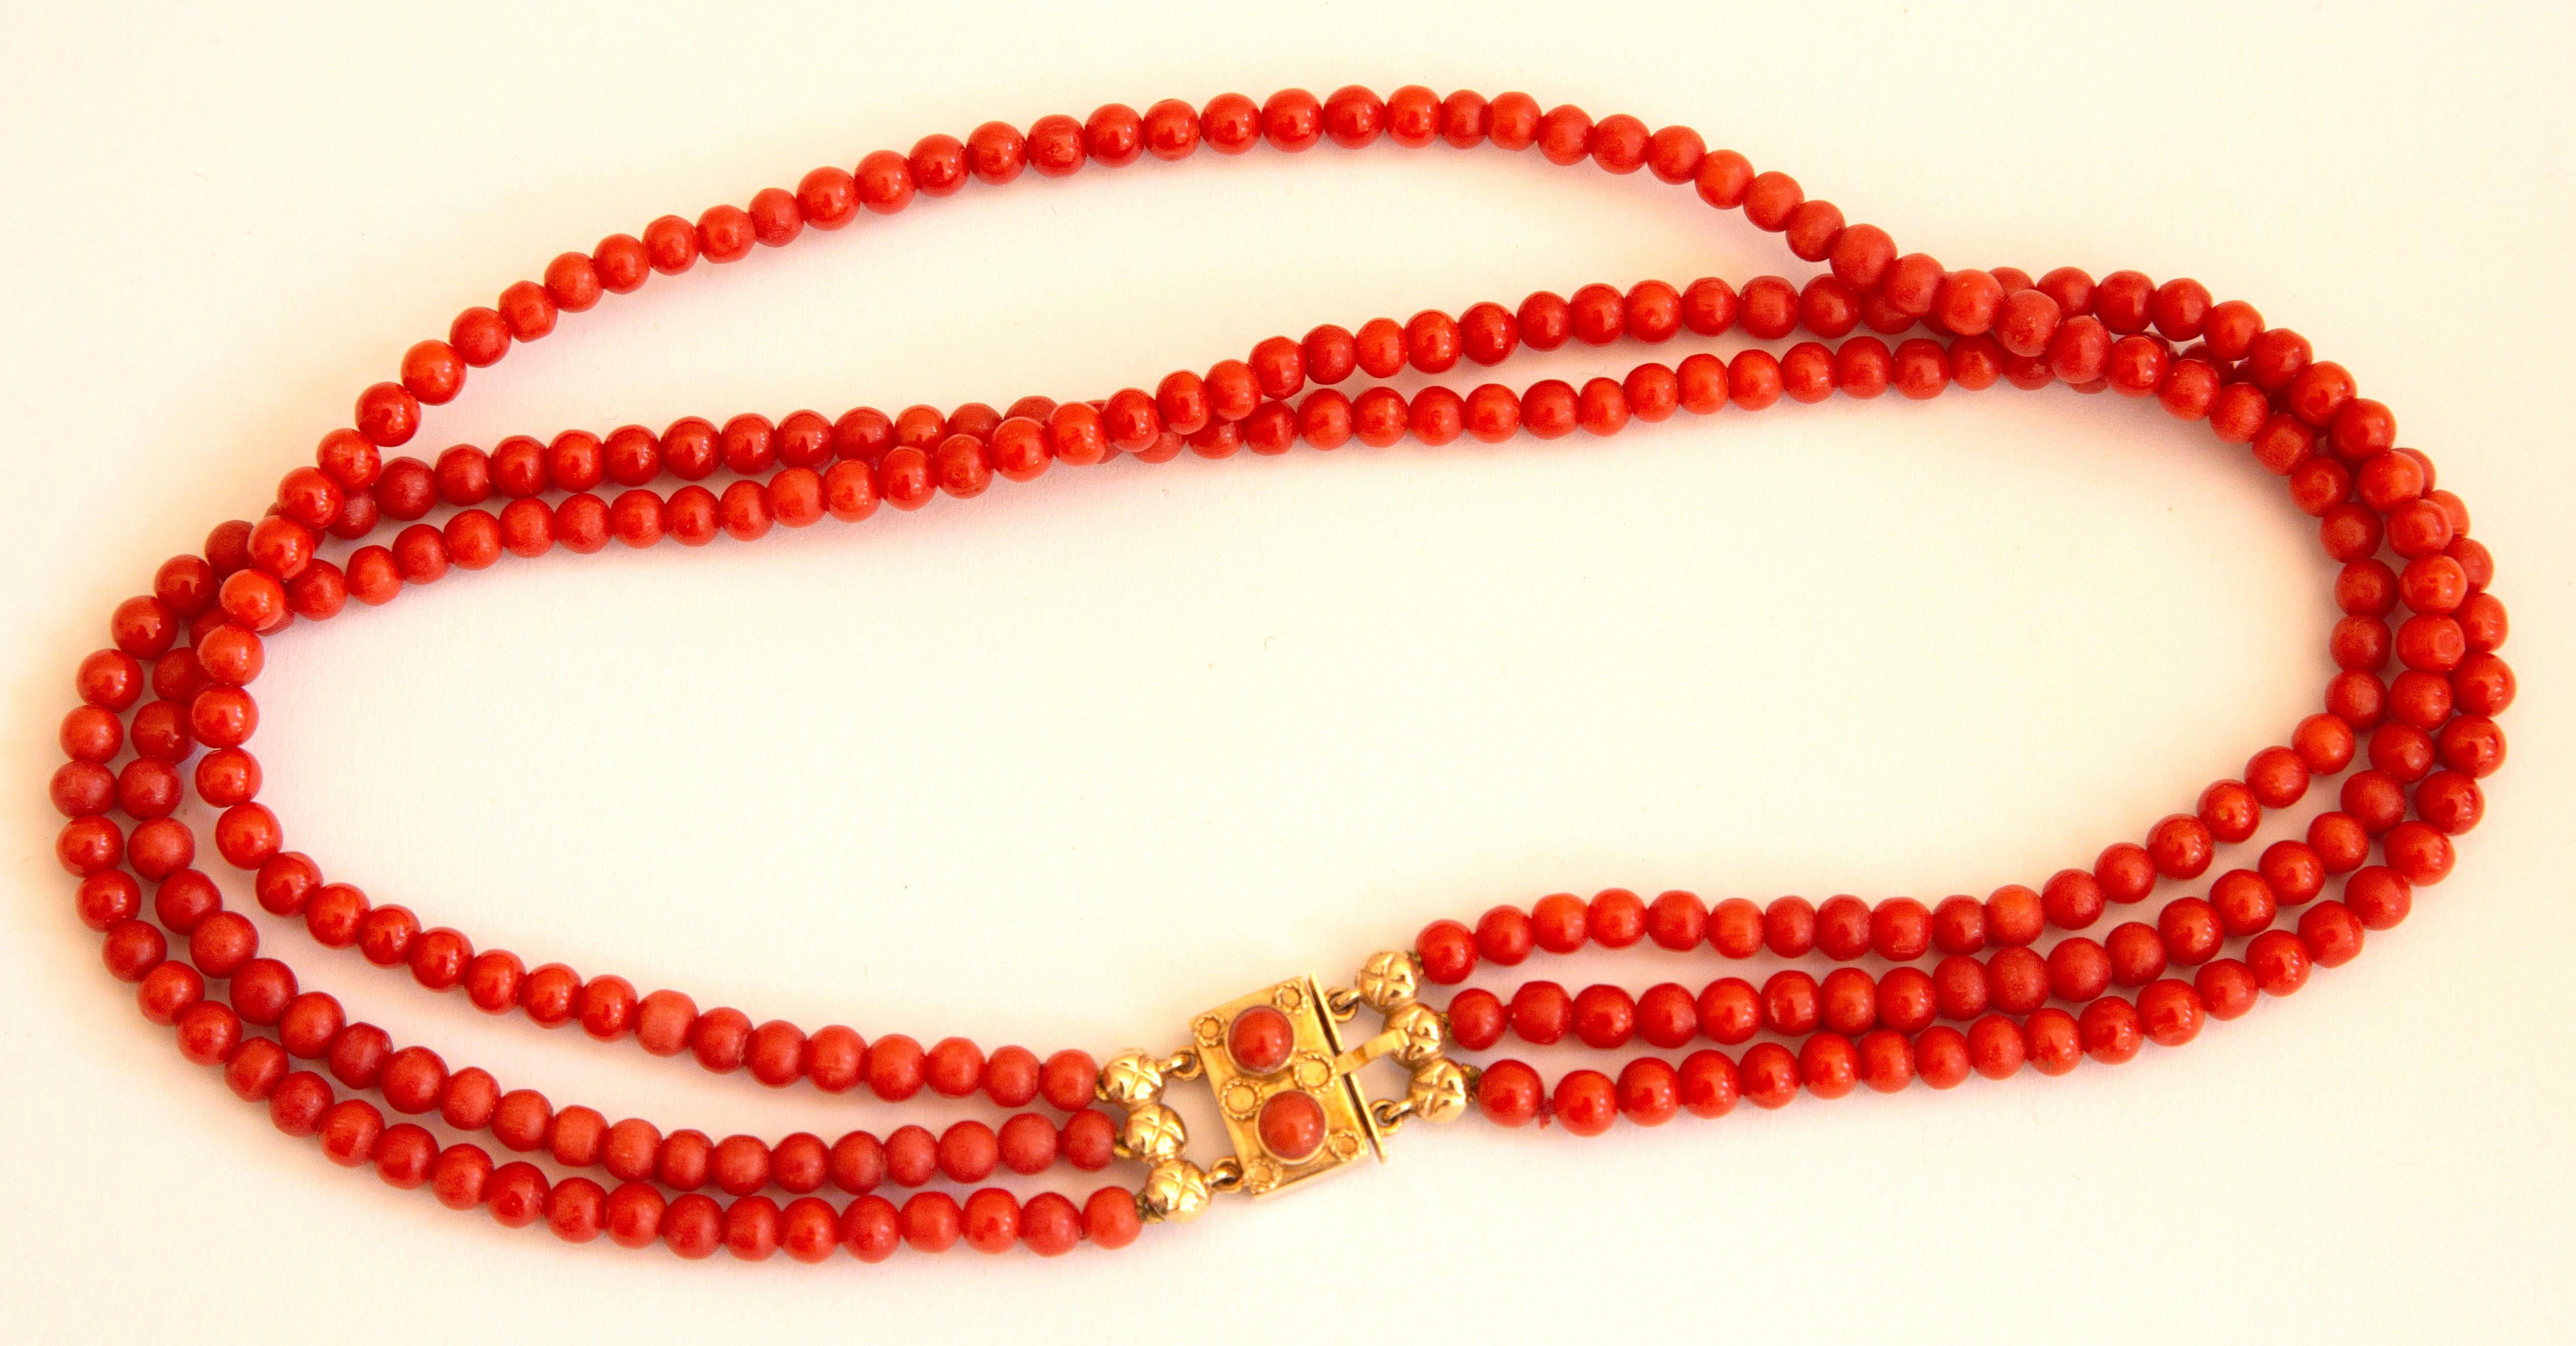 Antike Halskette aus natürlichen roten Korallenperlen mit 14-karätigem Goldverschluss. Das Armband besteht aus drei Strängen mit runden Perlen. Der Durchmesser der Perlen ist ca. 5 mm und die Farbe ist rot. Die Schließe hat eine rechteckige Form mit